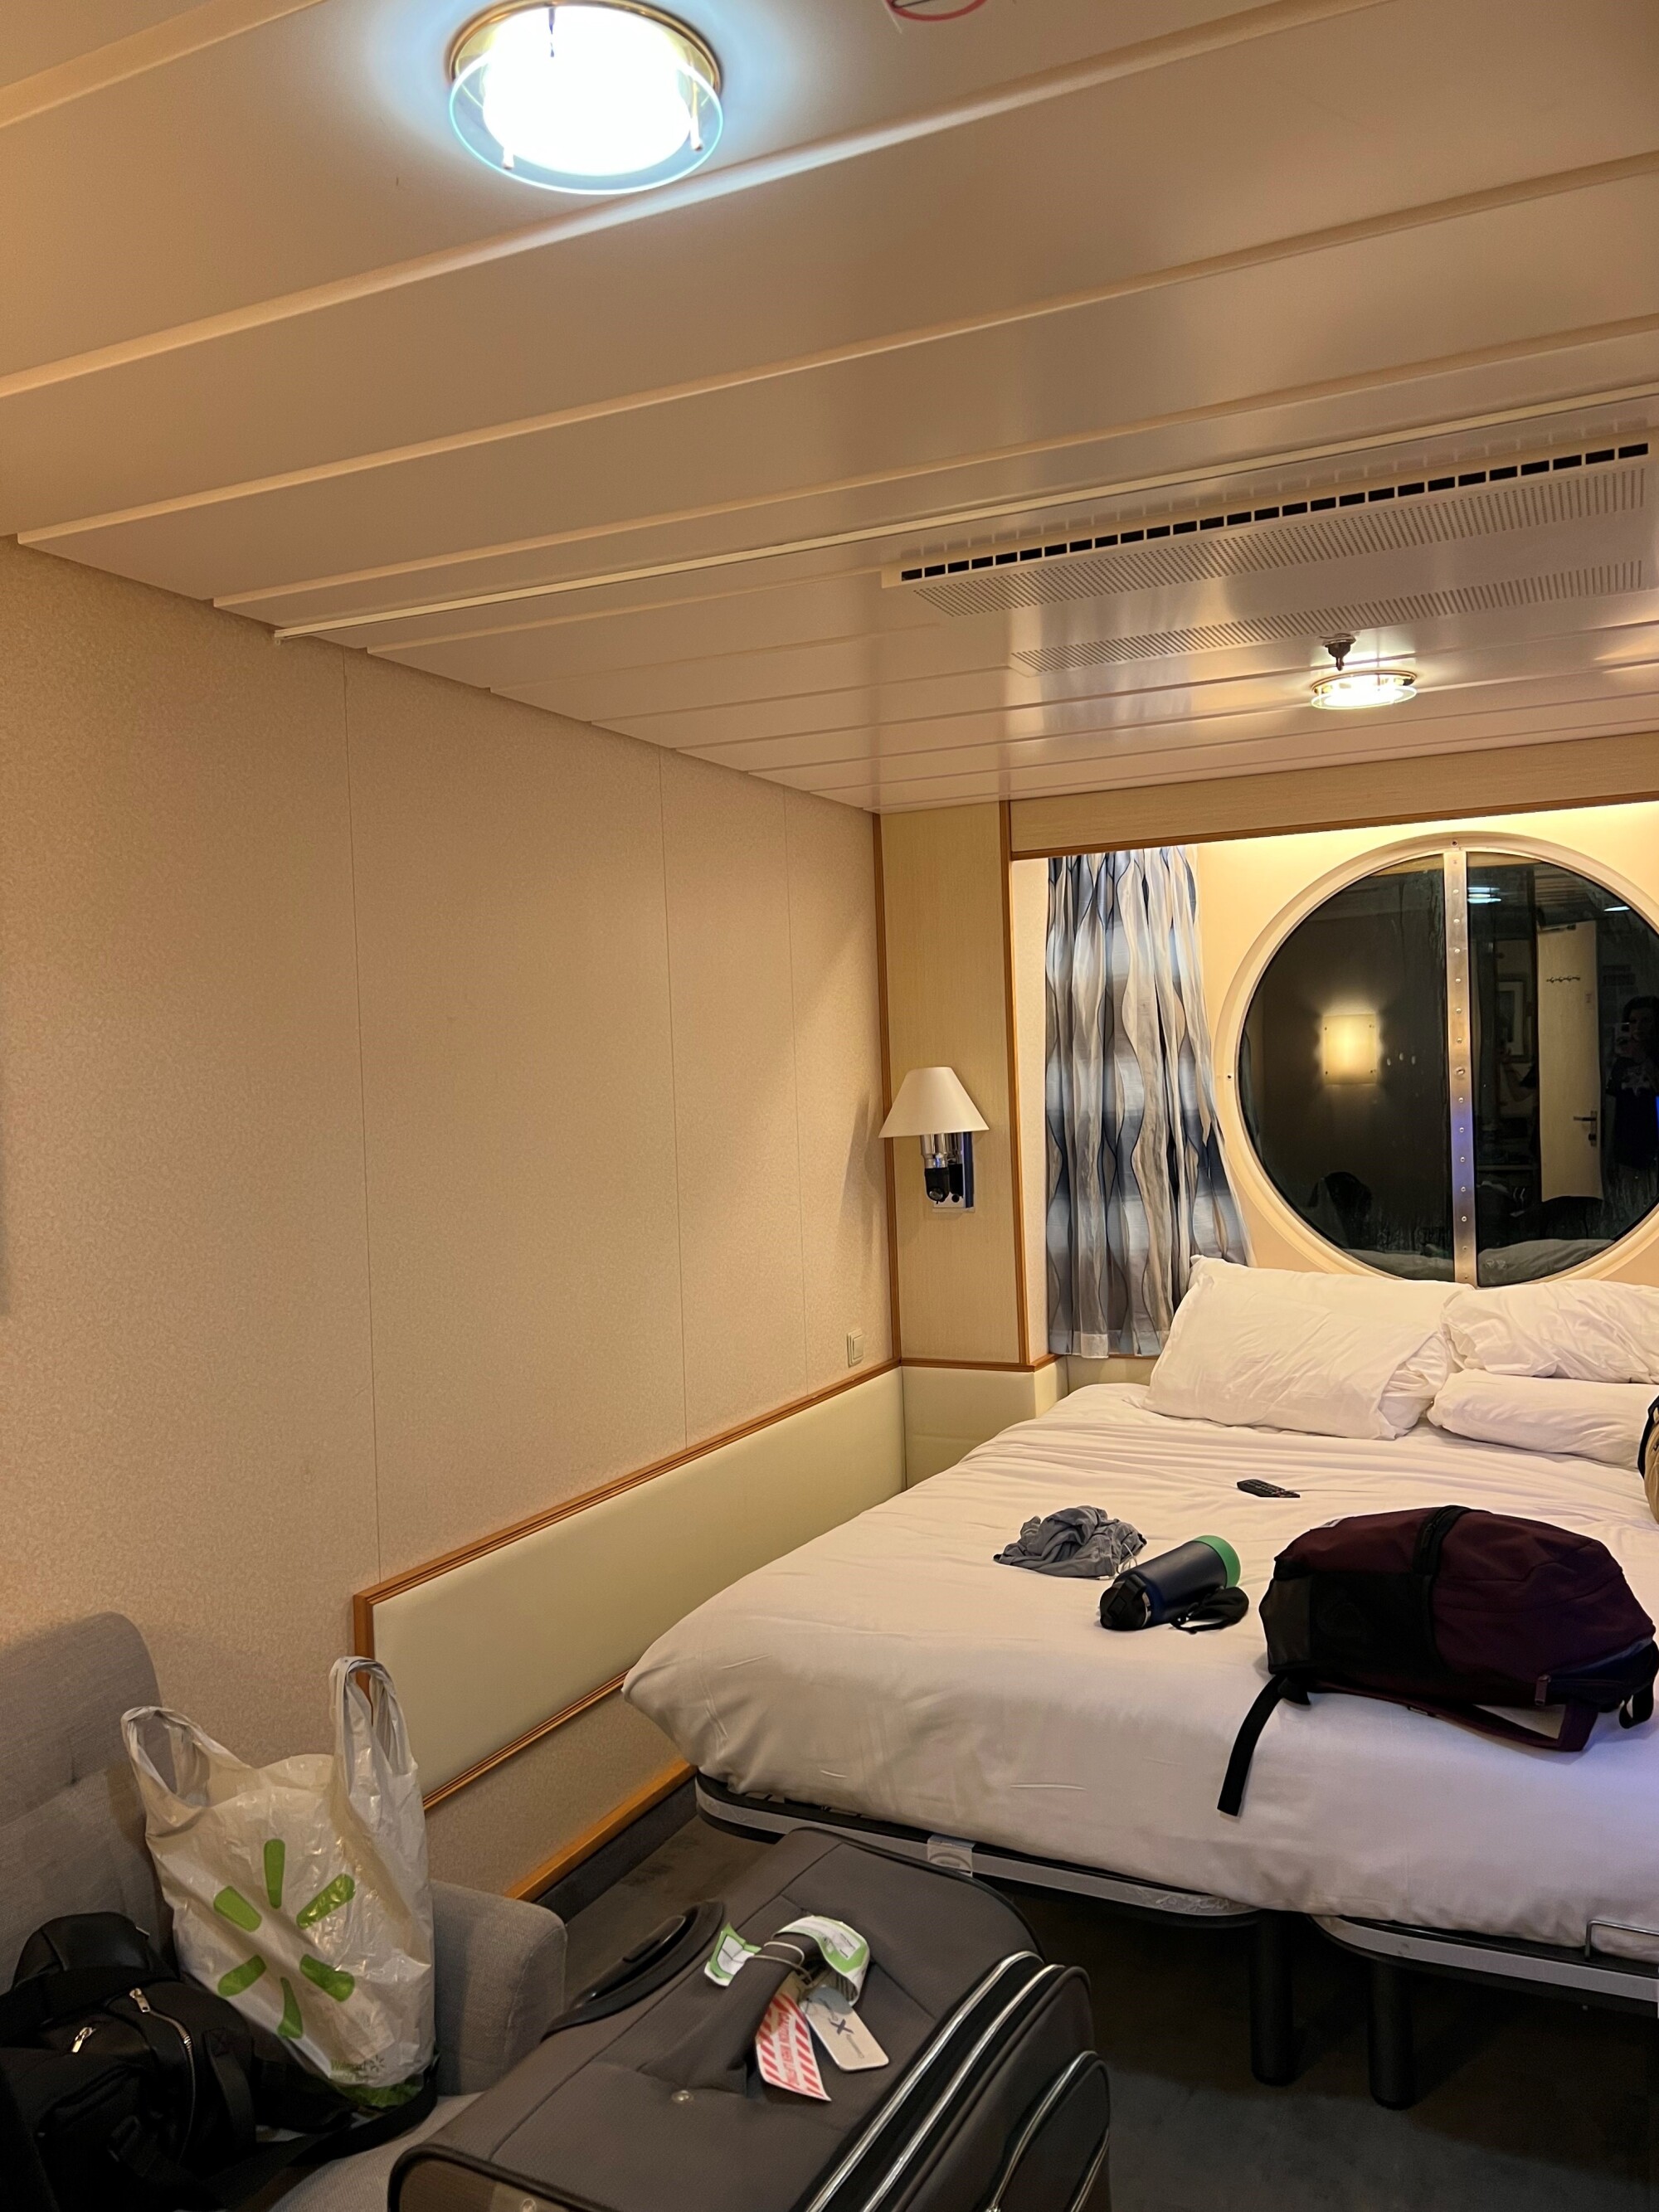 A cruise ship cabin